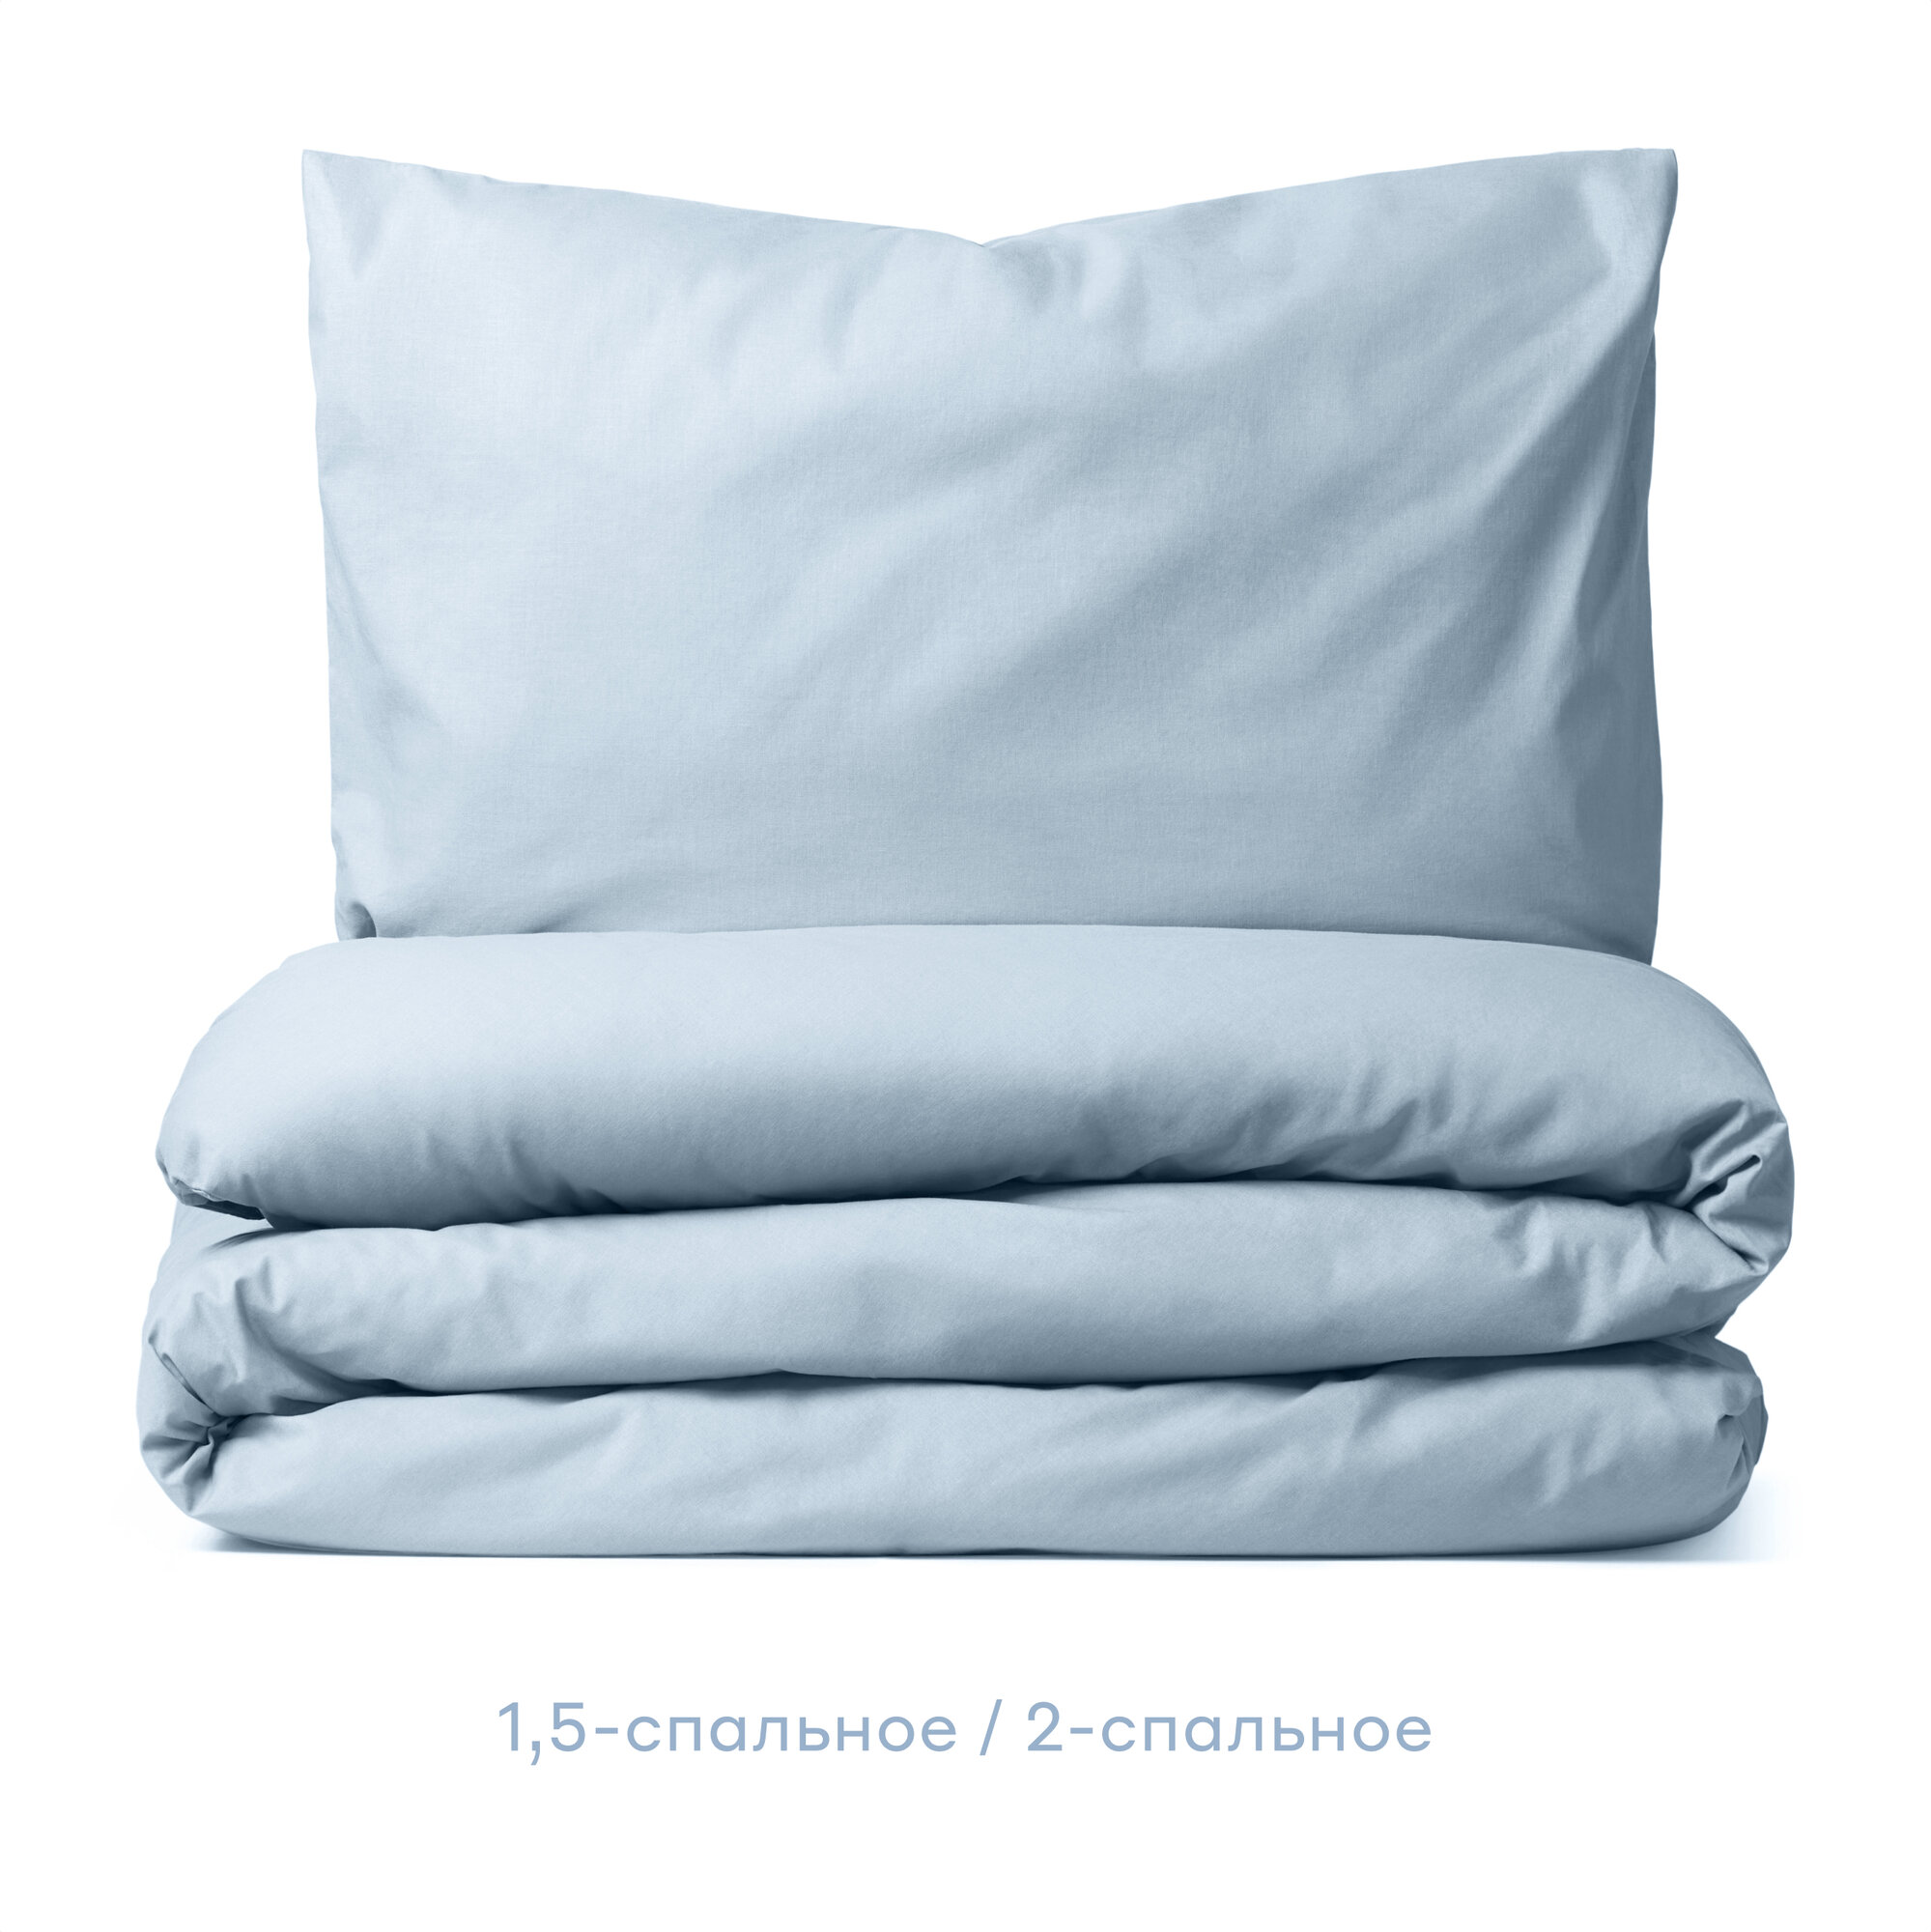 Комплект постельного белья Pragma Telso IK, 2-спальное, перкаль, нежный голубой